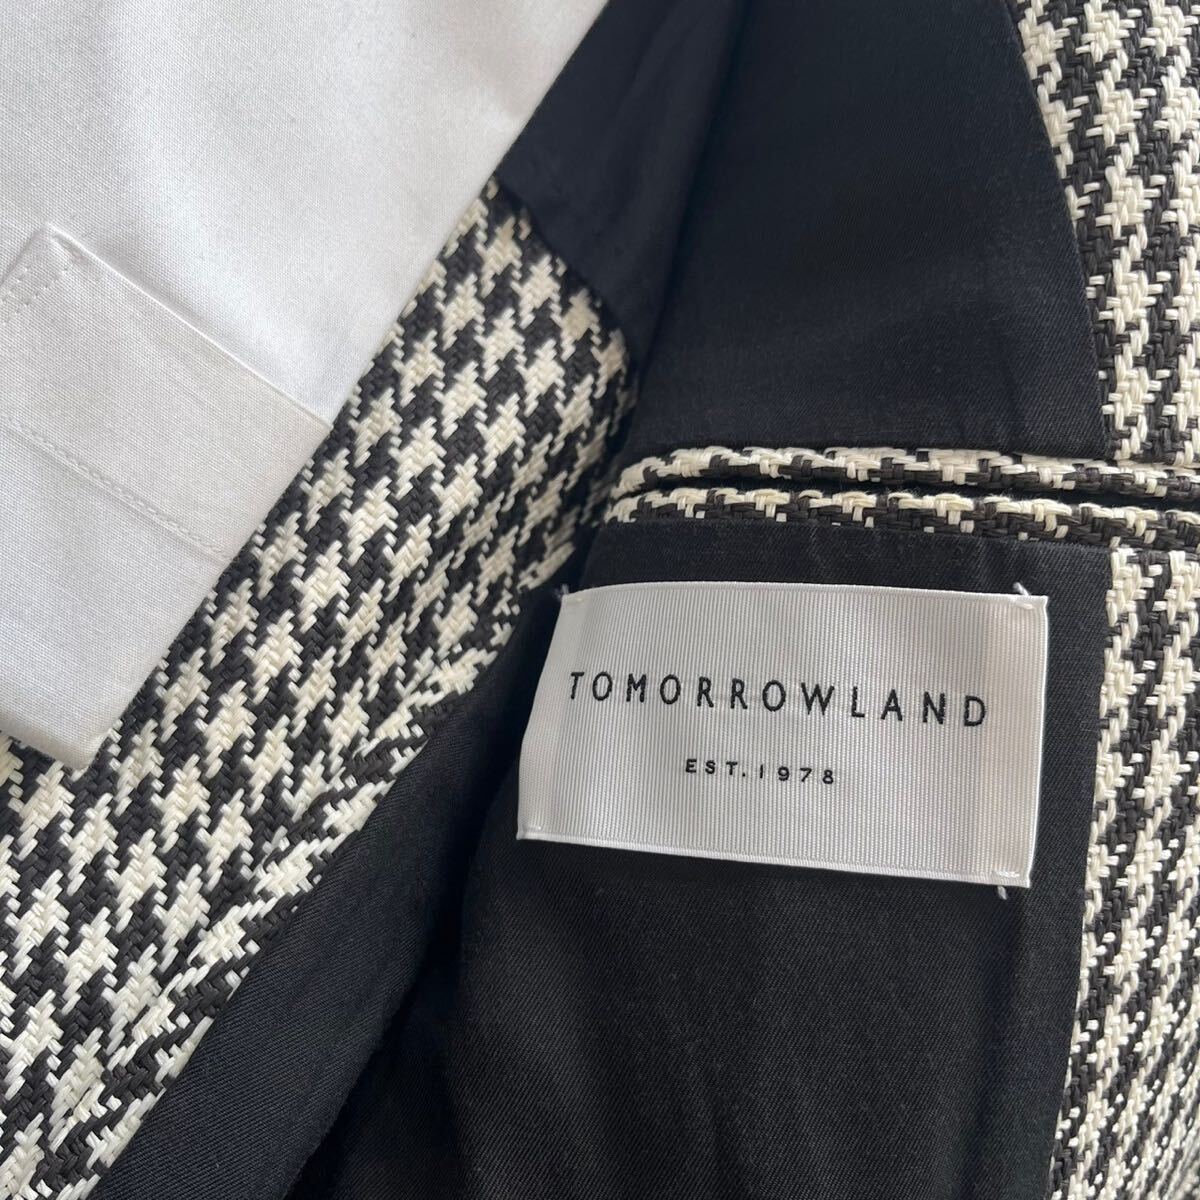  Tomorrowland [ популярный необычность материалы ]TOMORROWLAND костюм выставить tailored jacket тысяч птица рисунок белый черный 